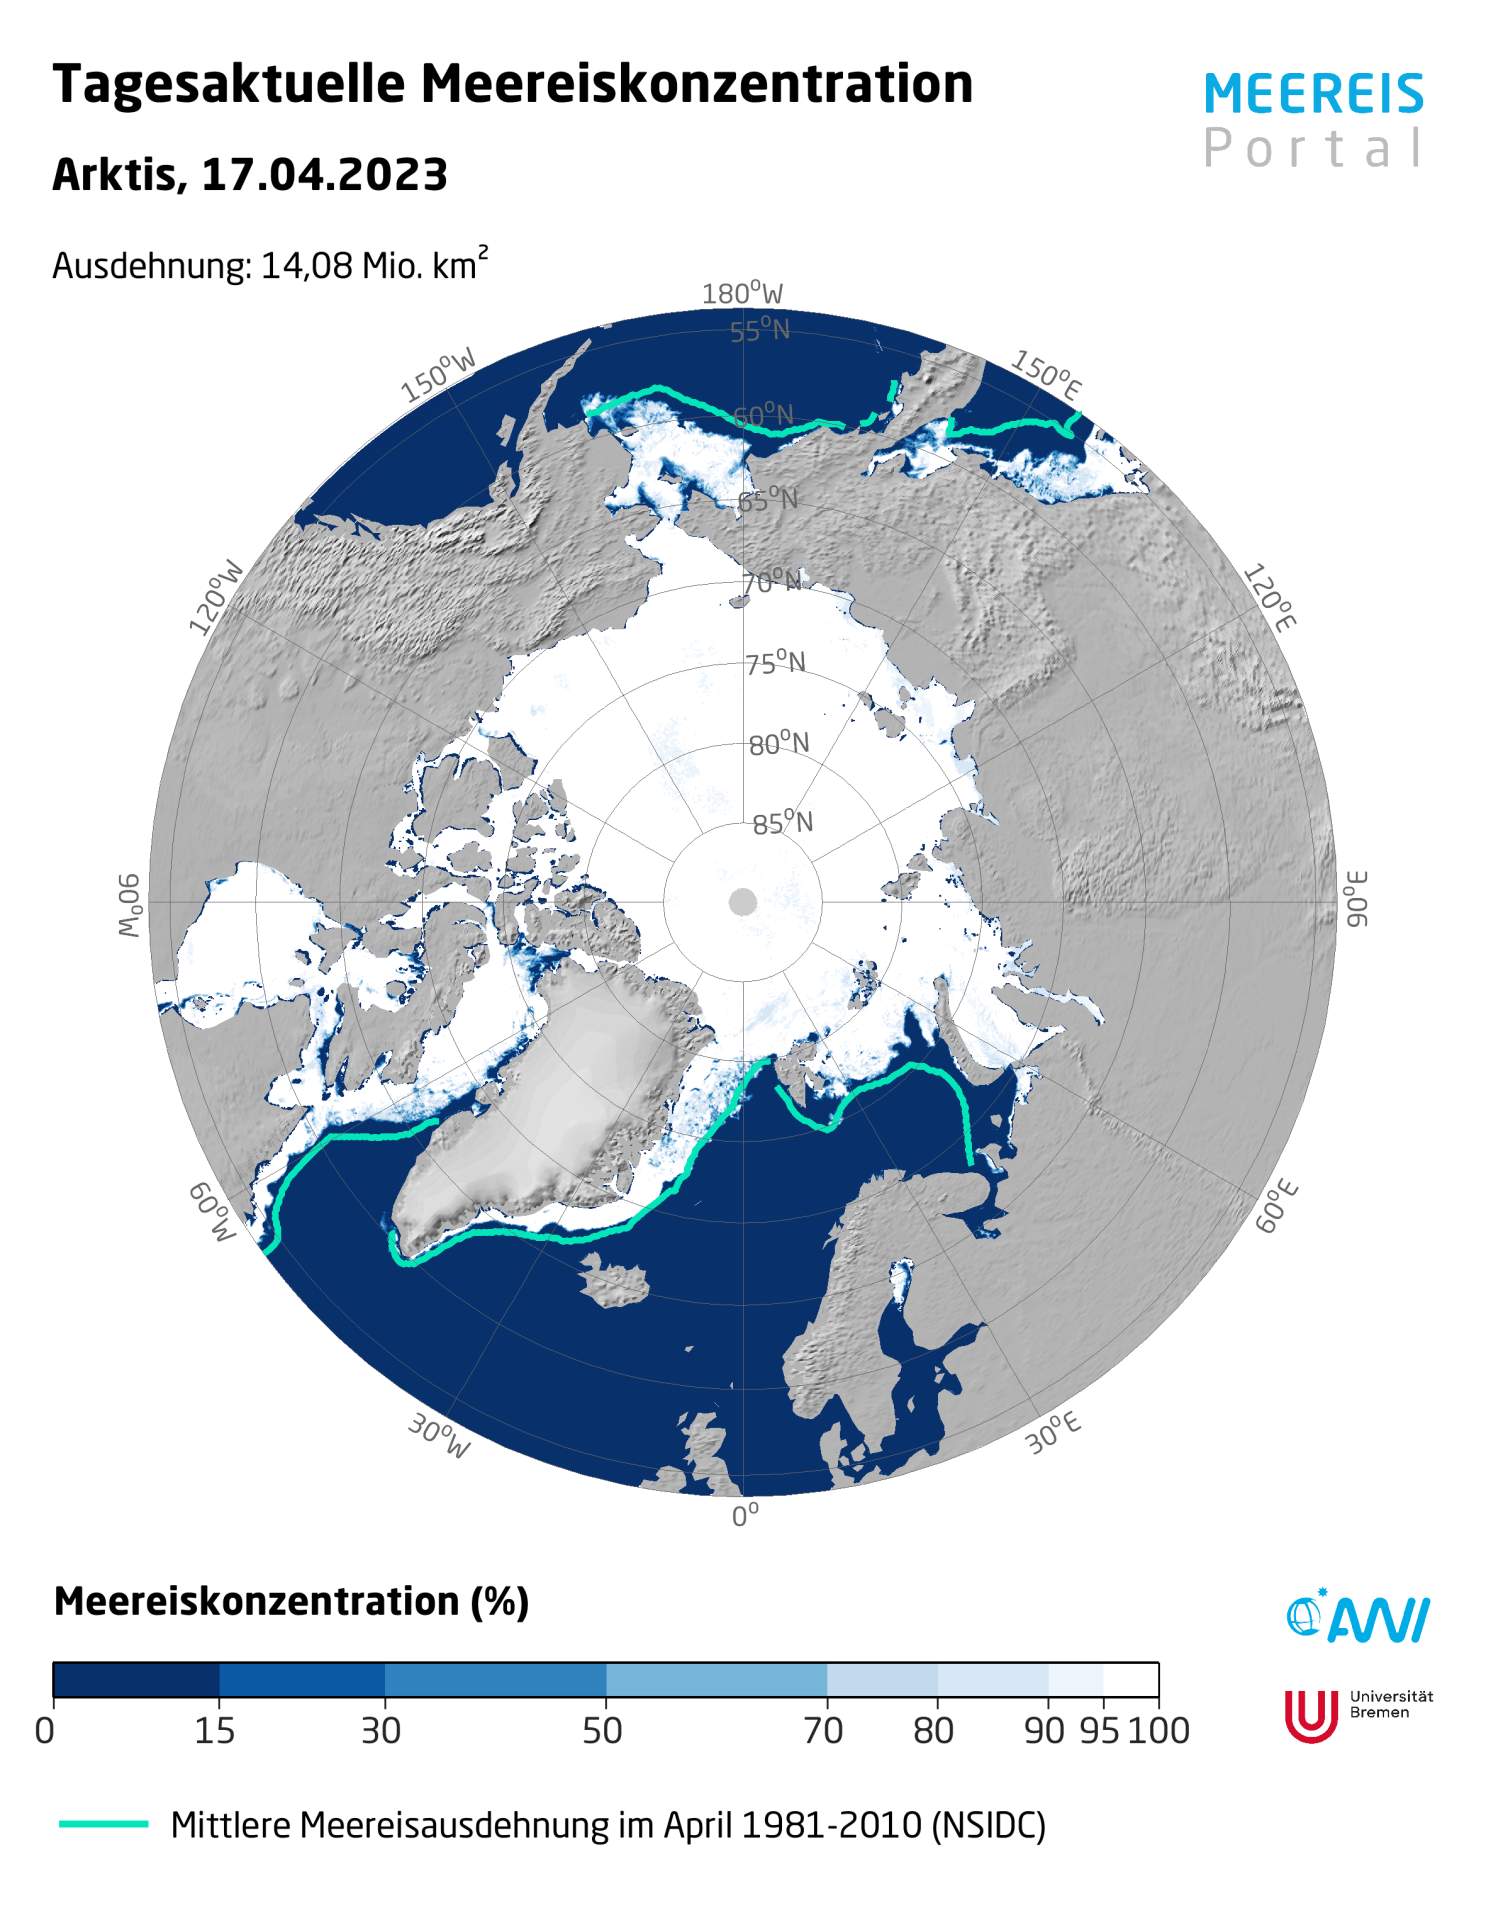 Fig. 1: Sea ice concentration on April 17, 2023; Source: meereisportal.de